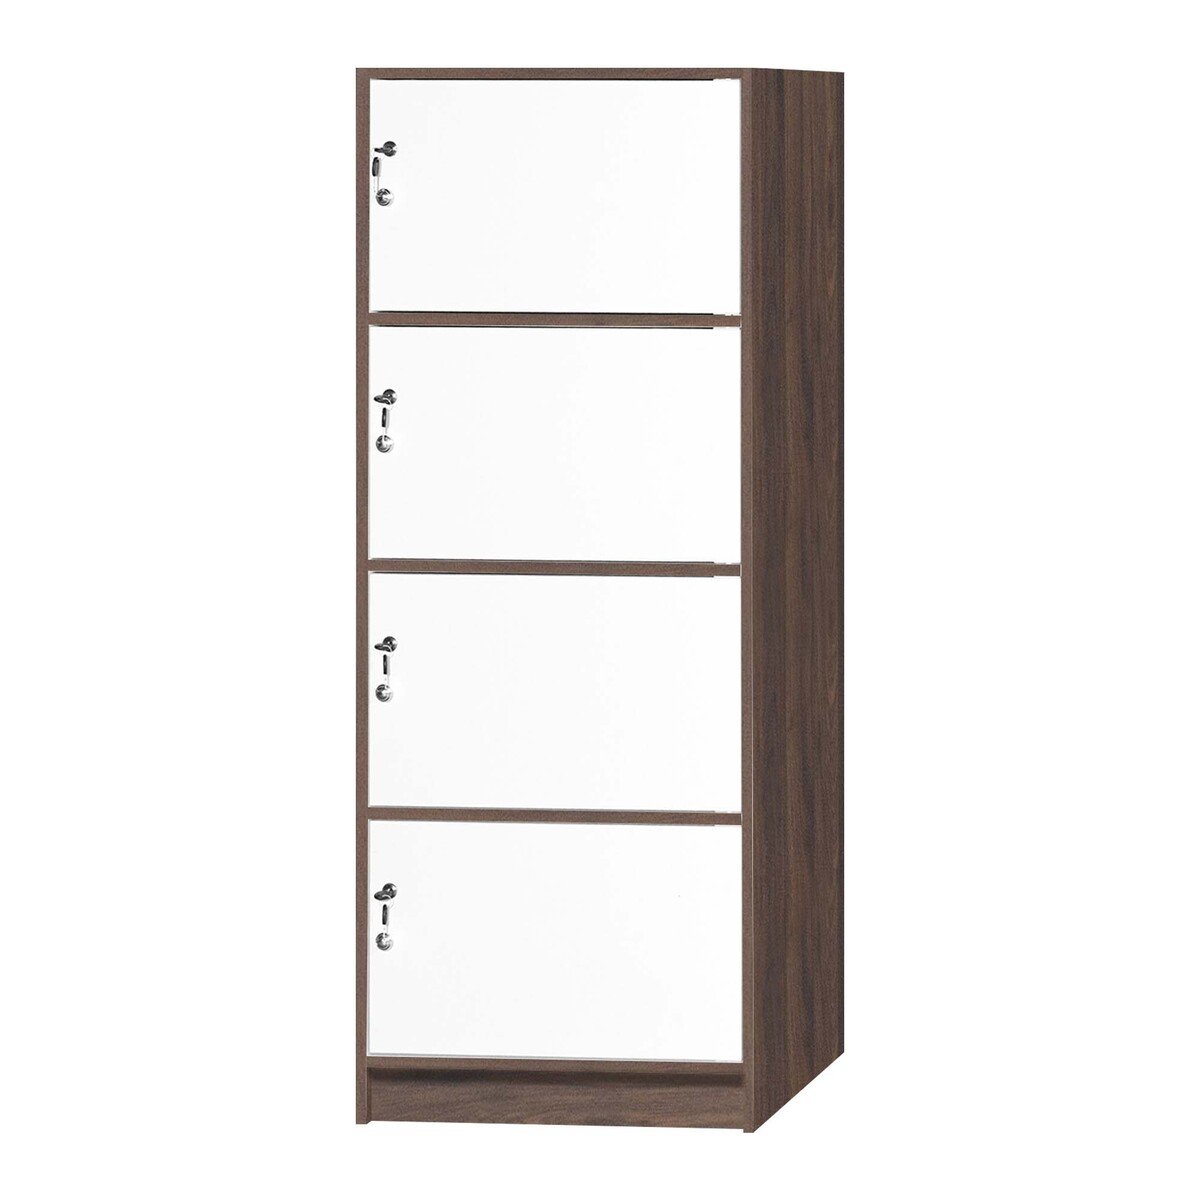 Maple Leaf Wooden Storage Cabinet 4Door With Lock H160xW60xD40cm Walnut White